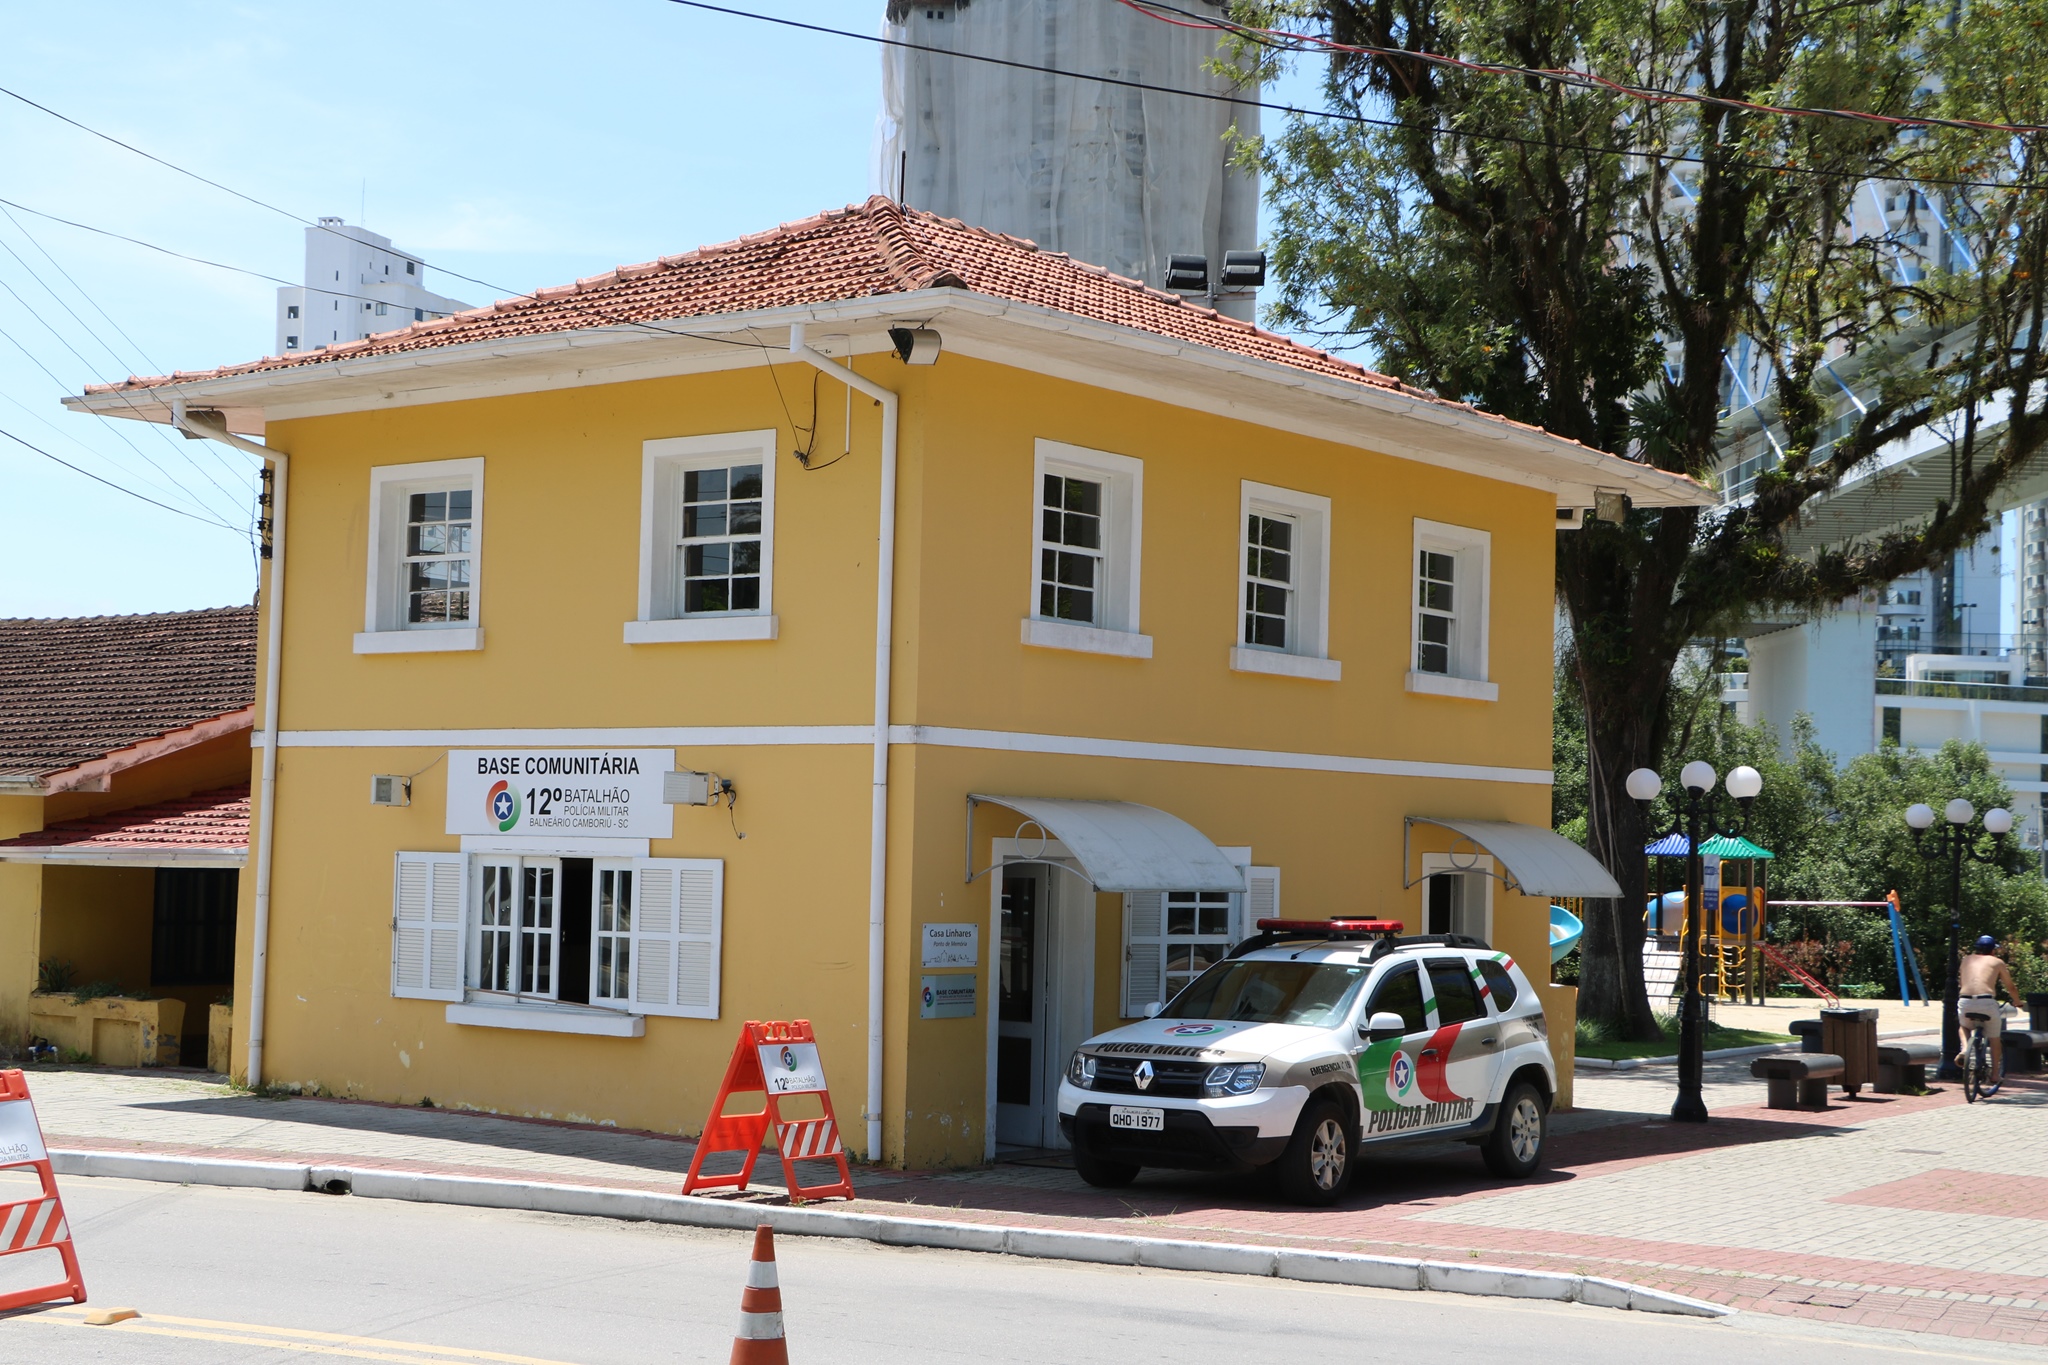 Subprefeitura da Região Sul começa a atender na Casa Linhares nesta segunda